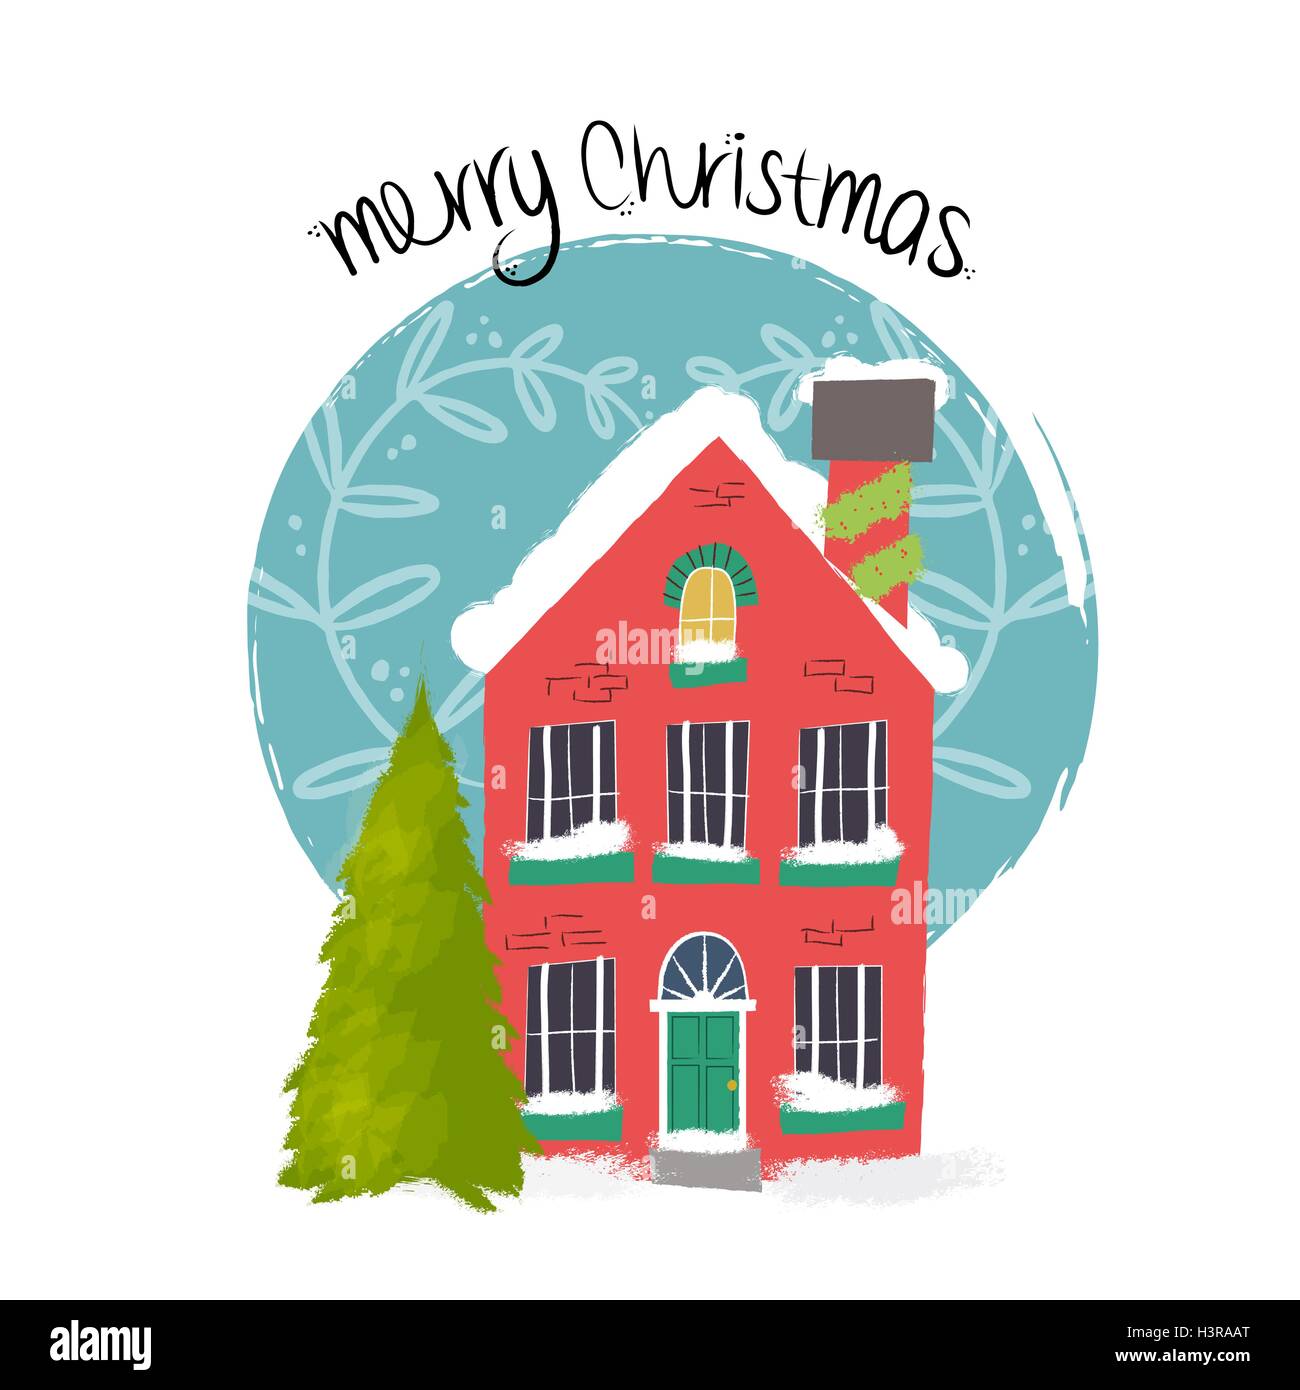 Handgezeichnete Frohe Weihnachten Illustration mit bunt verzierten Haus mit Schnee bedeckt. EPS10 Vektor. Stock Vektor